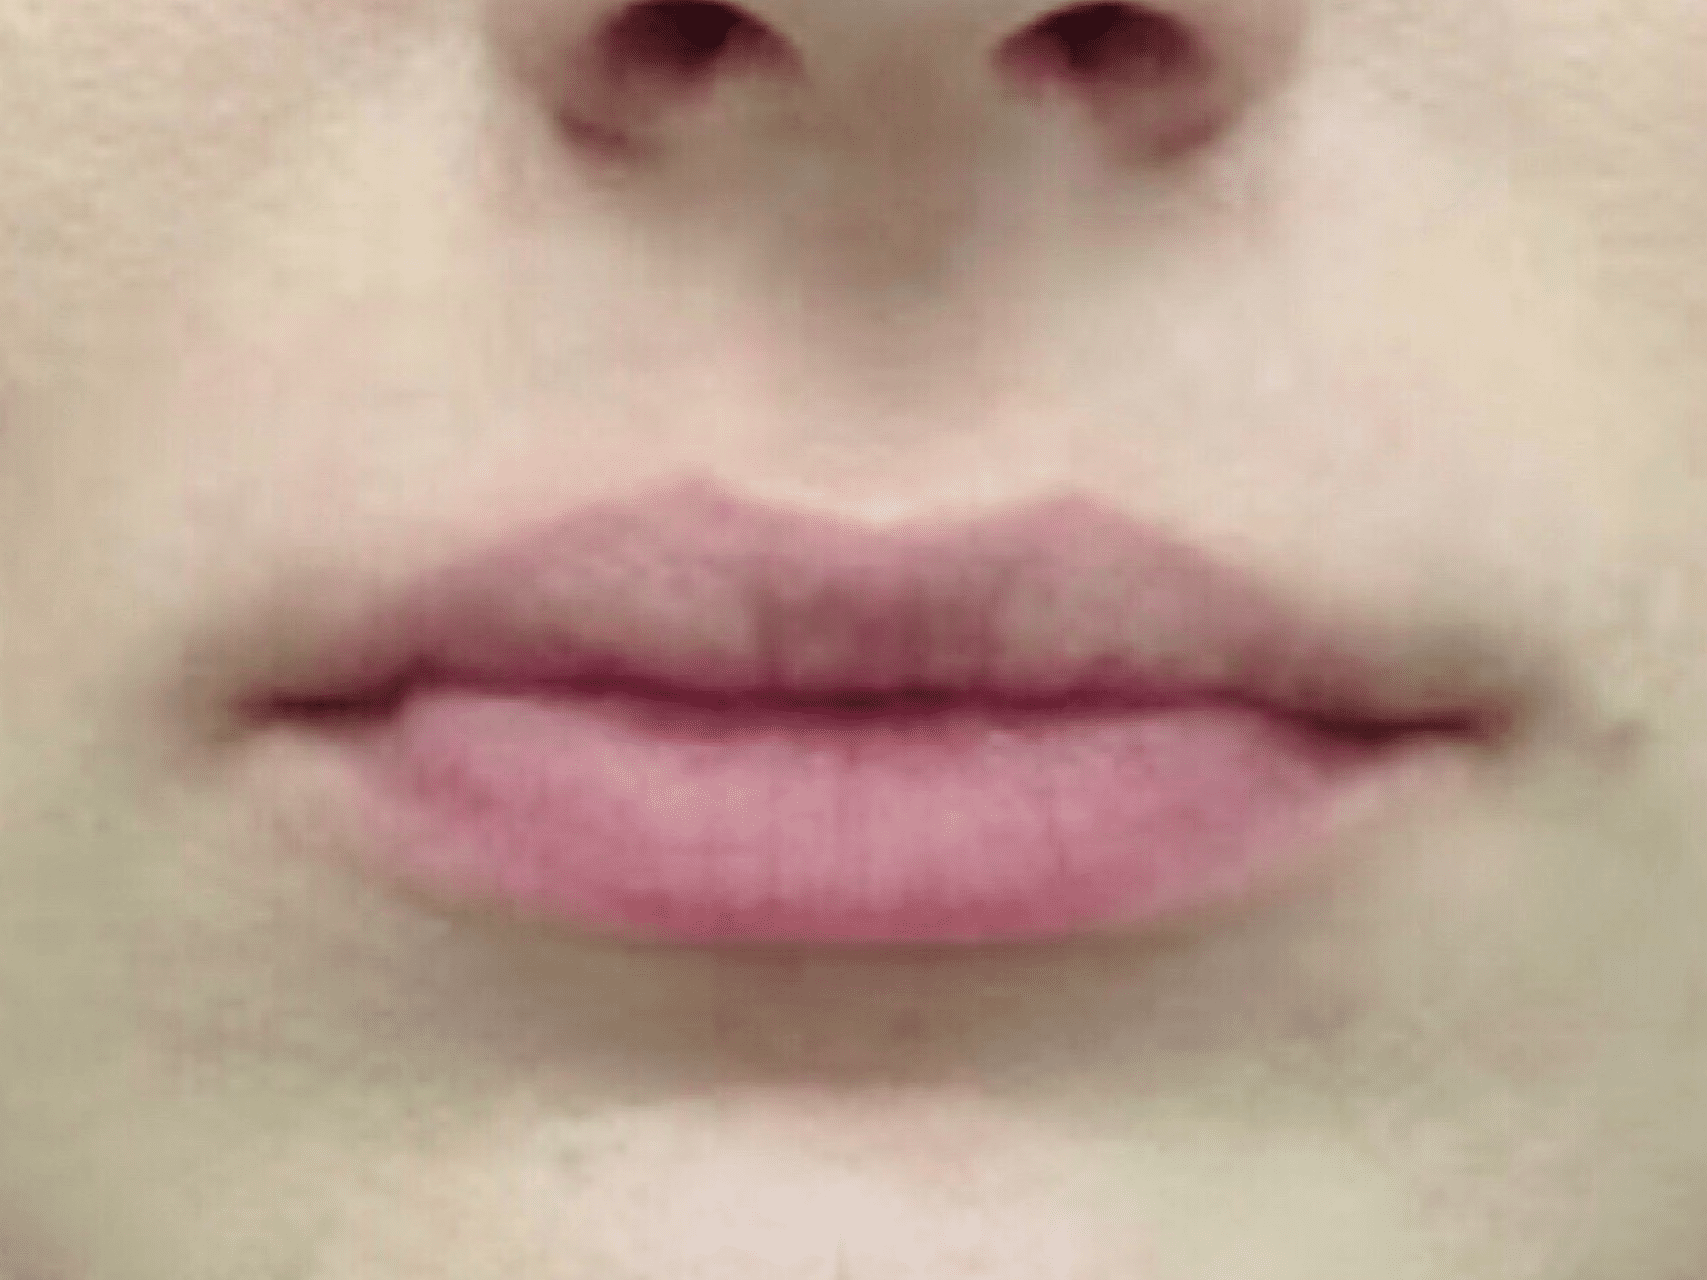 Lip Augmentation Patient Photo - Case 8288 - before view-